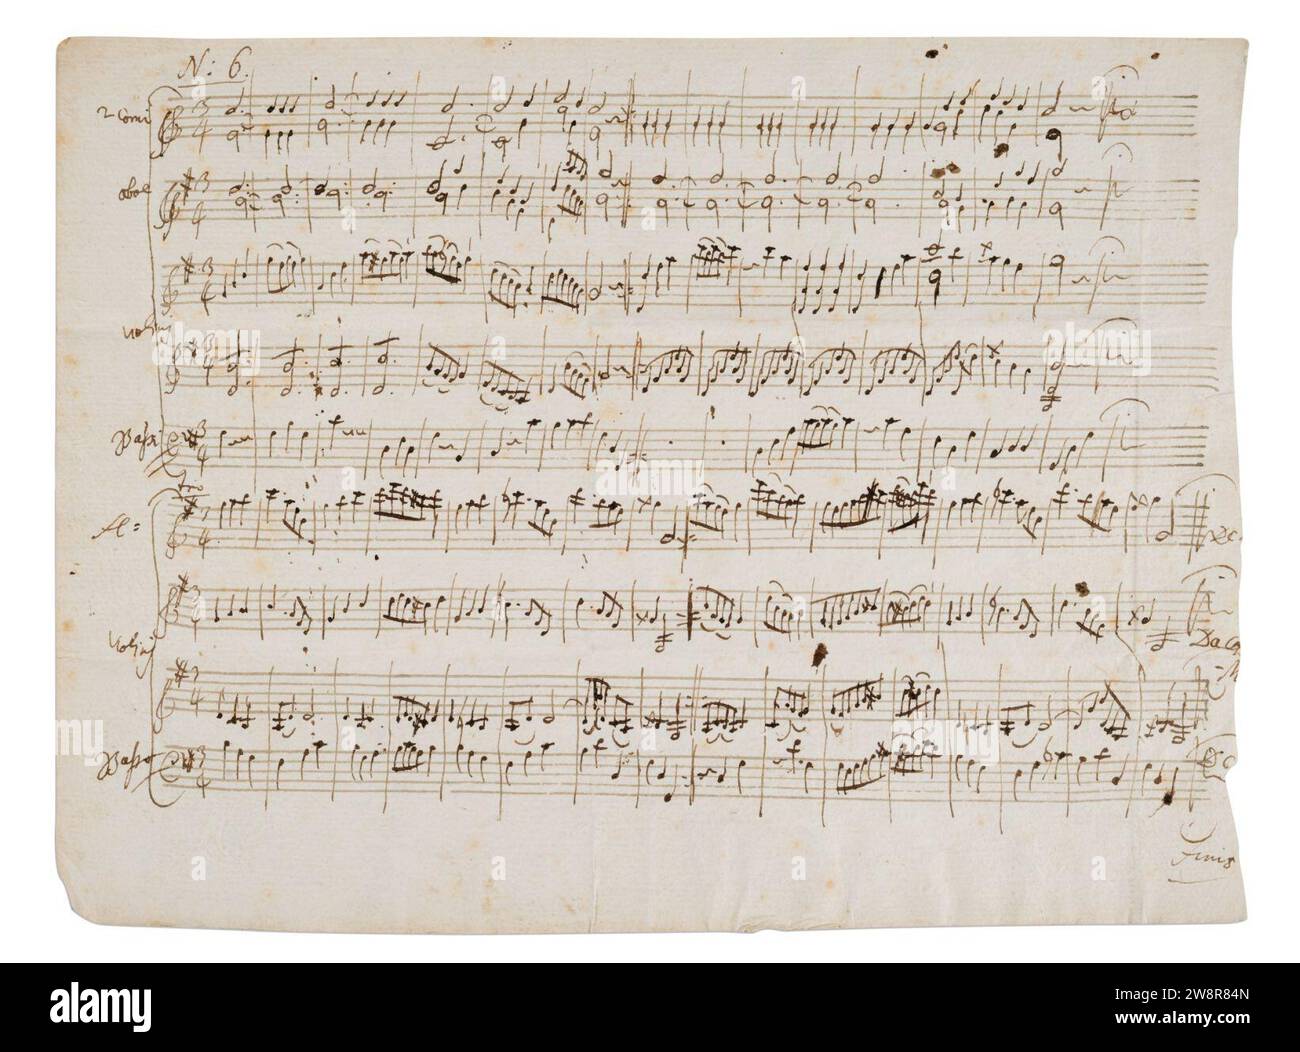 Wolfgang Amadeus Mozart - Manuscrit Autographe Des Deux Menuets Pour Orchestre - K.164 - sheet 2 of 2. Stock Photo